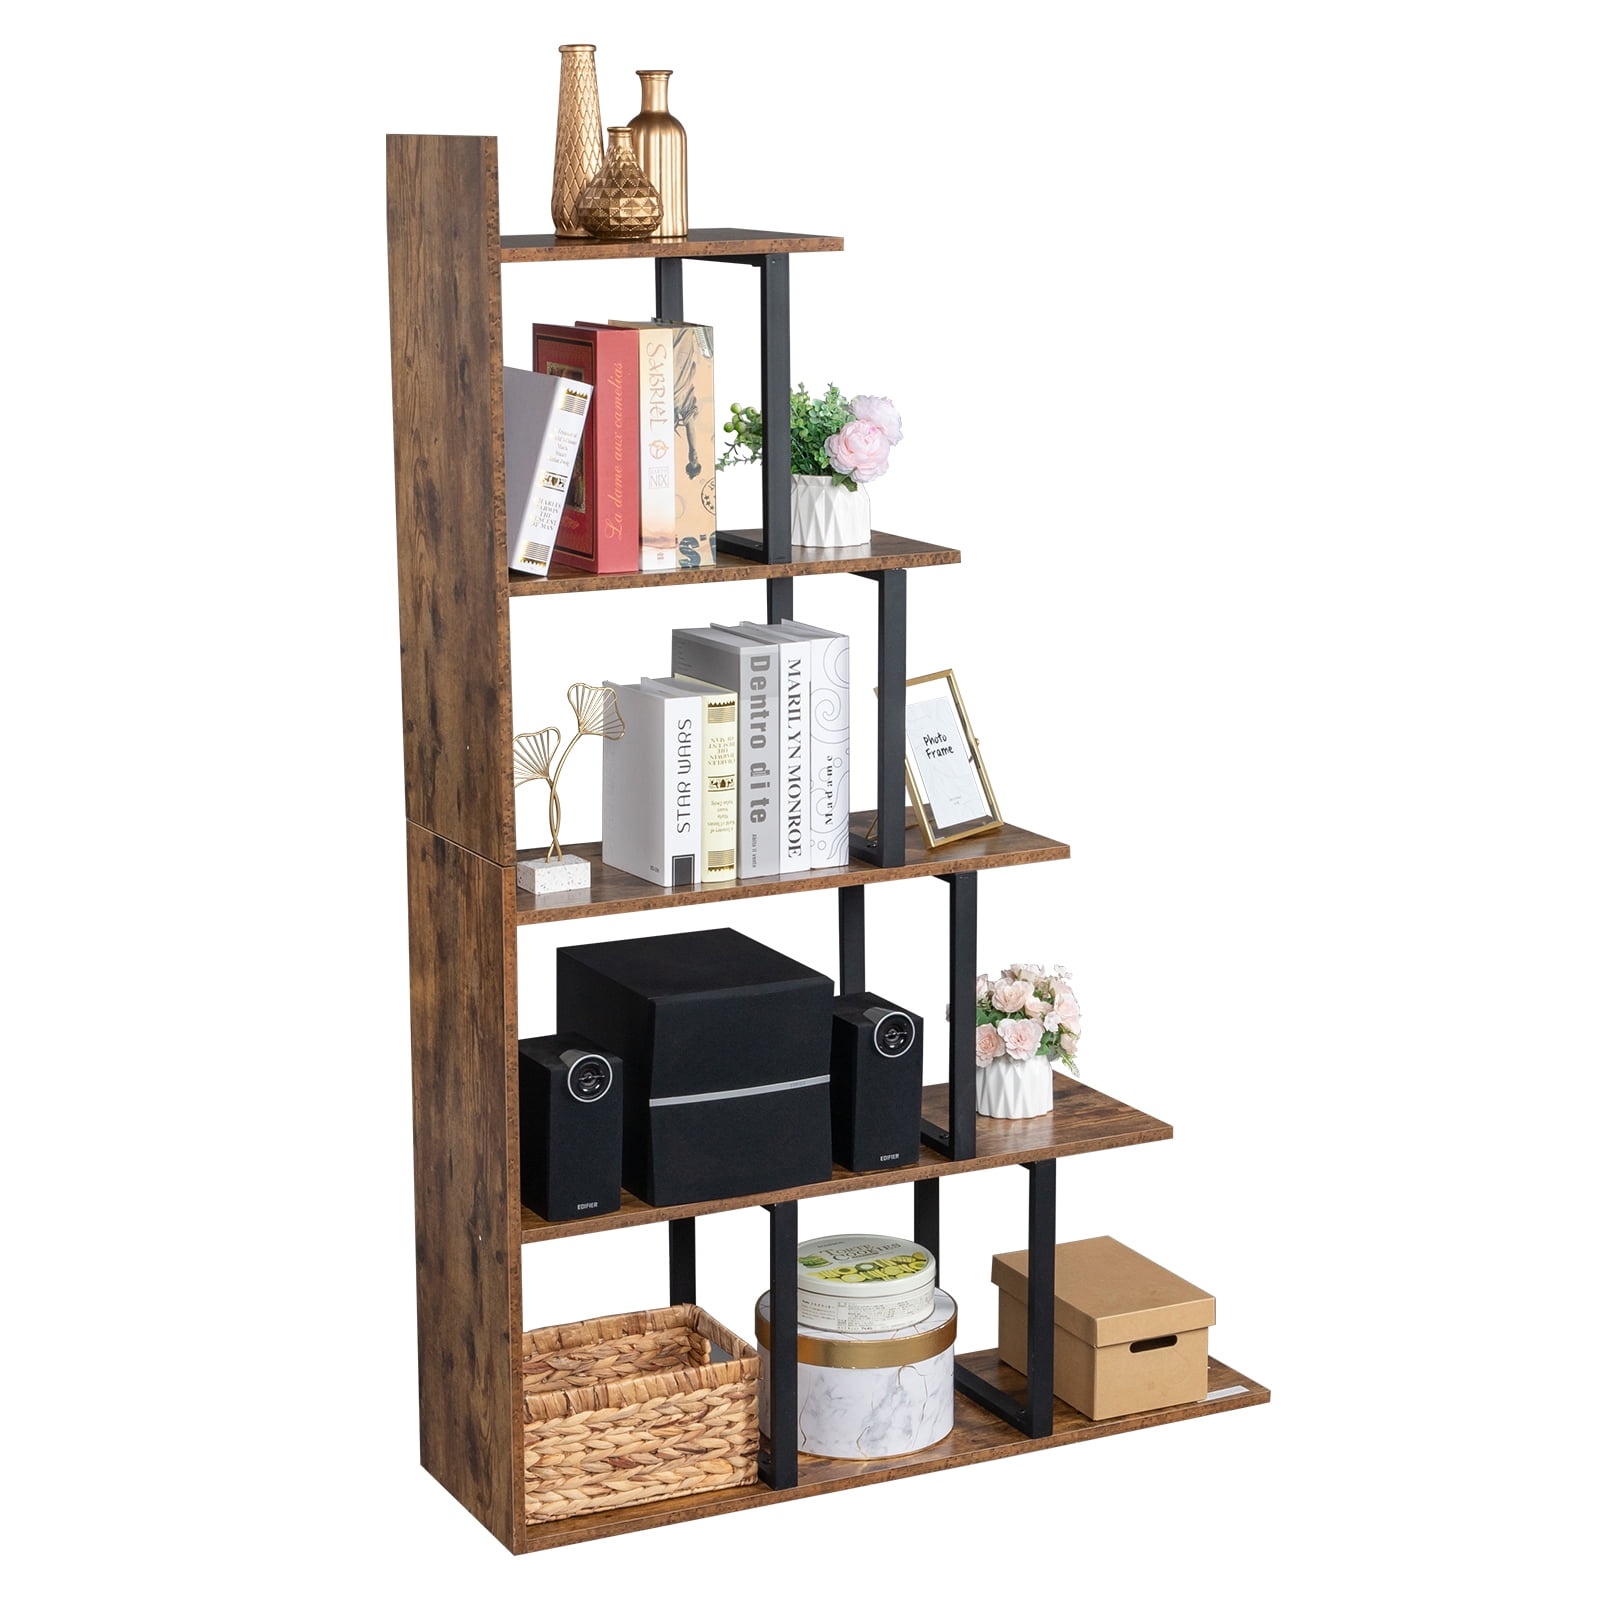 Details about   Bookshelf Rack 5 Tier Book Rack Bookcase Storage Organizer Modern Wood Accent